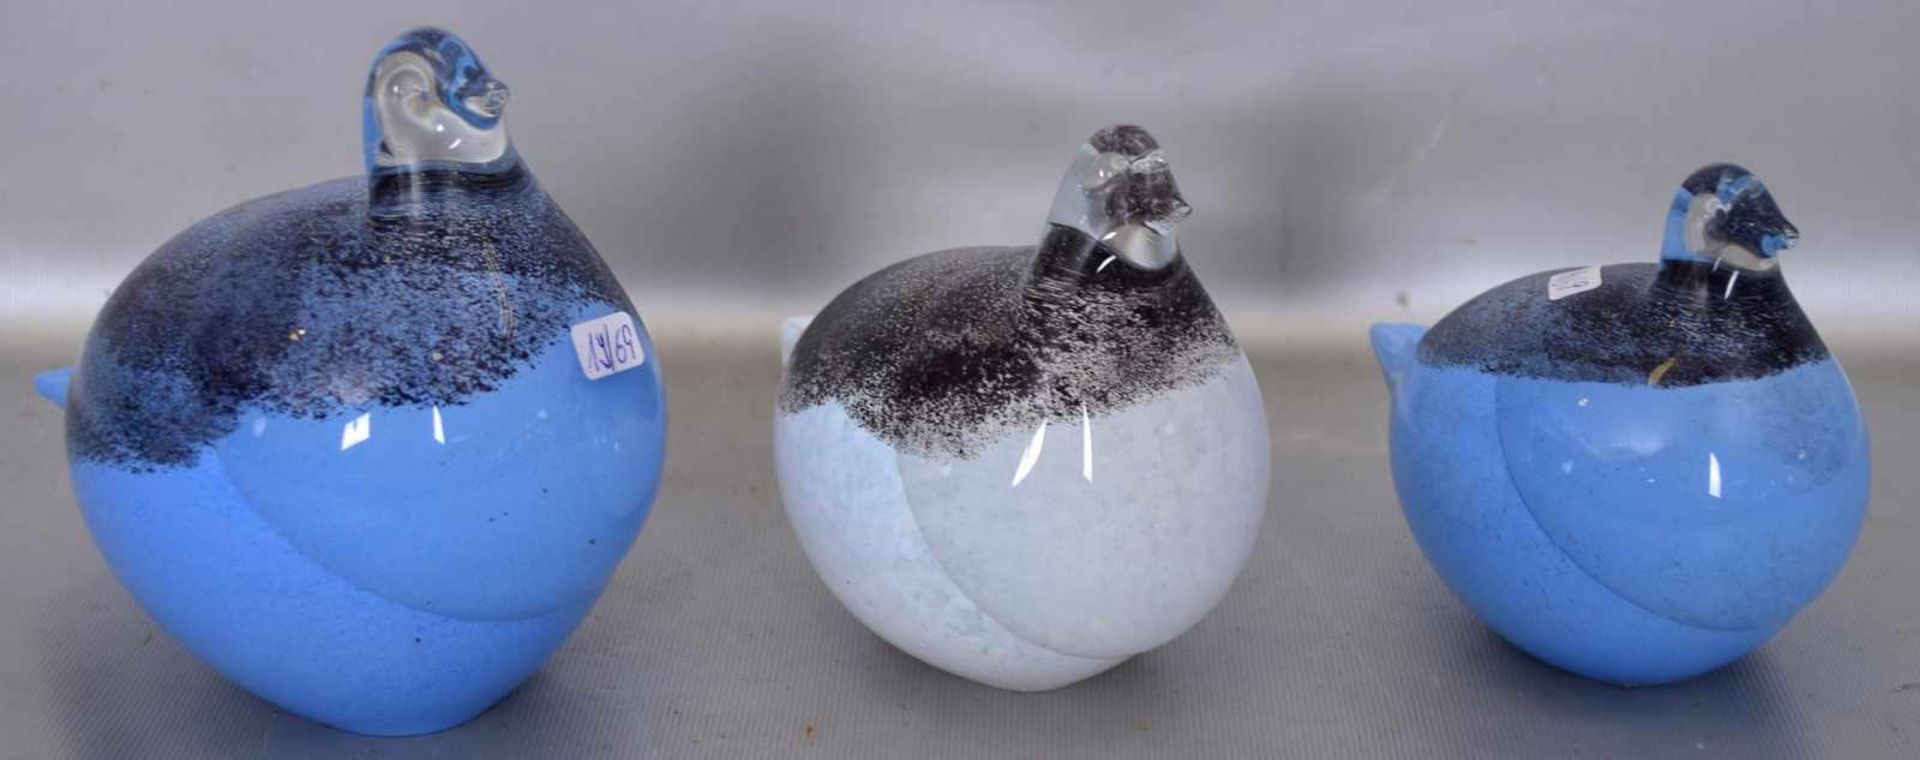 Drei Taubenfarbl. Glas, mit schwarz/blauer Farbeinschmelzung, verschiedene Größen, H 10 cm bis 13